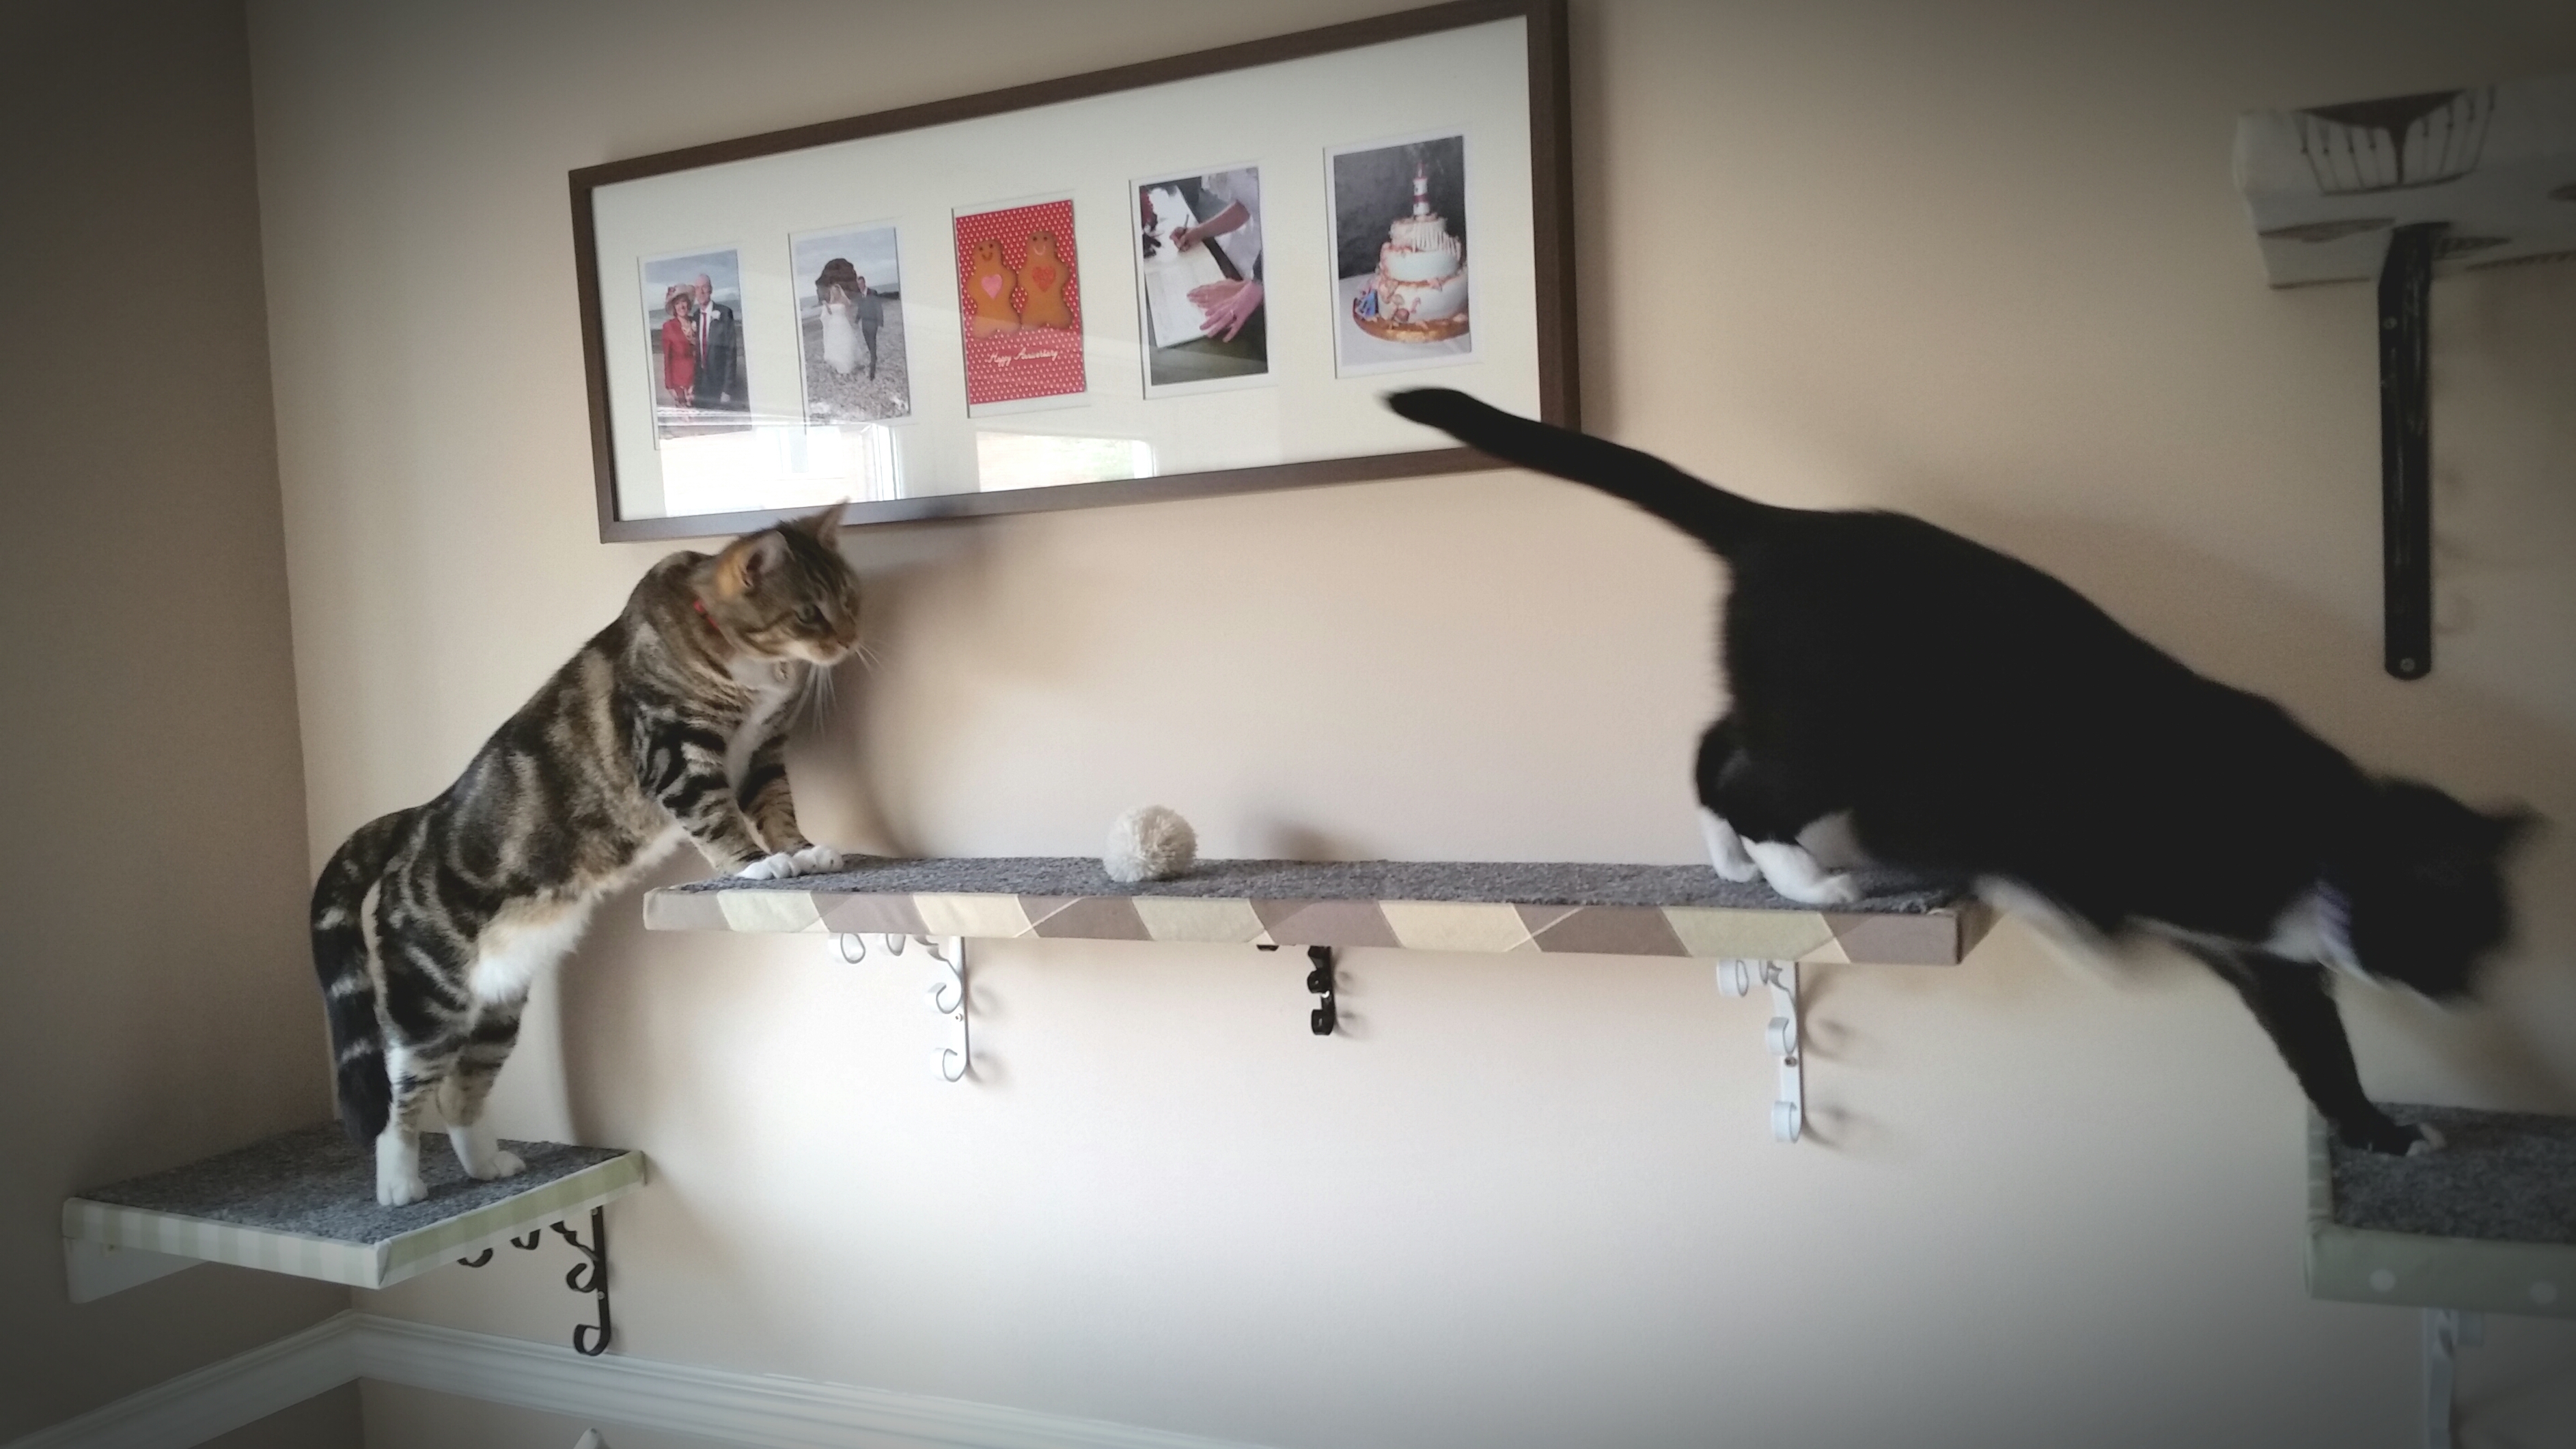 How to Make Homemade DIY Cat Shelves | Whitburn Whiskers Cat Sitting